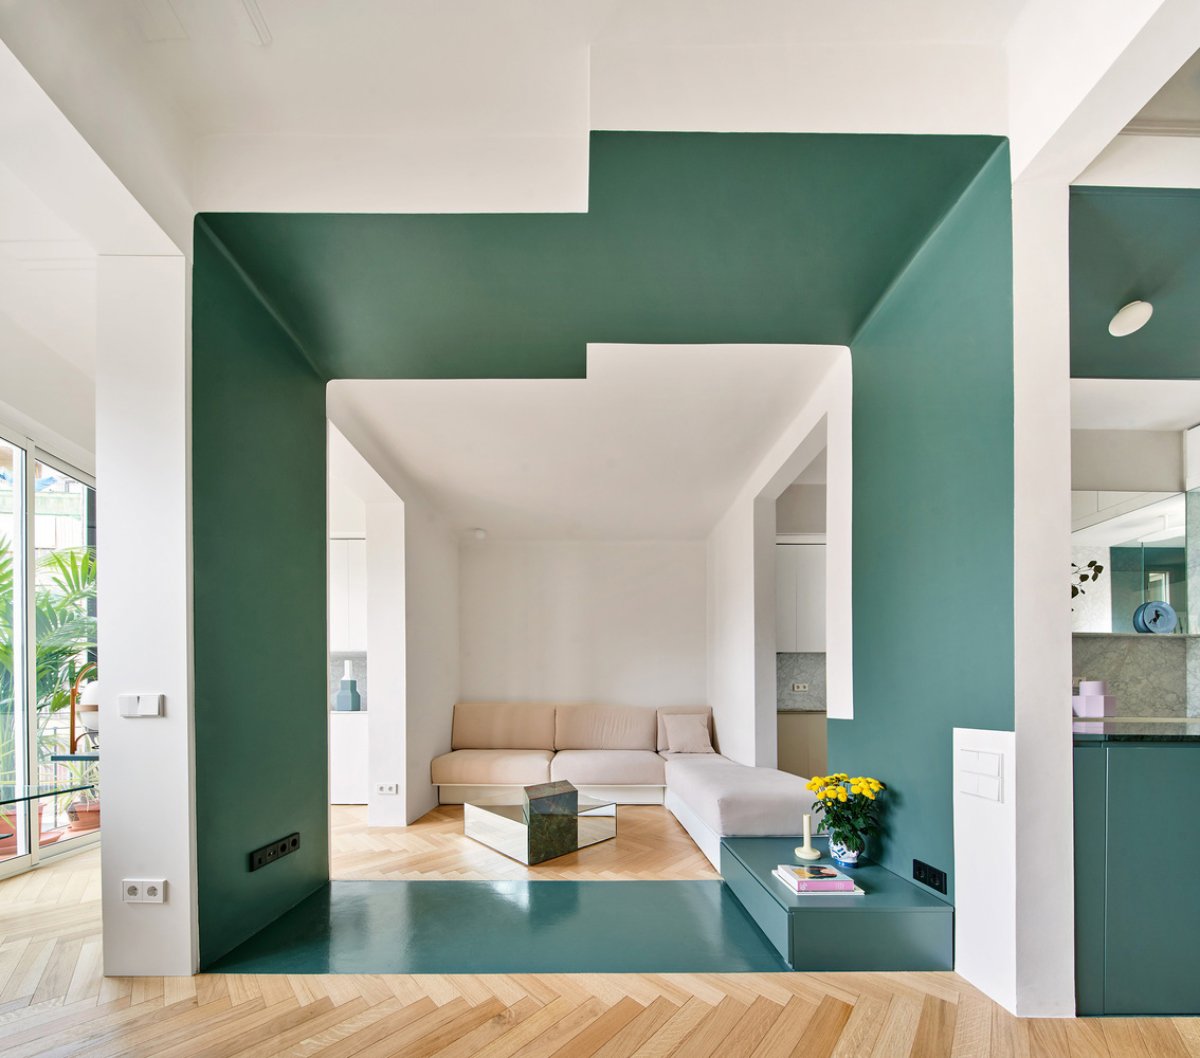 Salón verde y pequeño habilitado en una zona de paso gracias a un cubículo verde